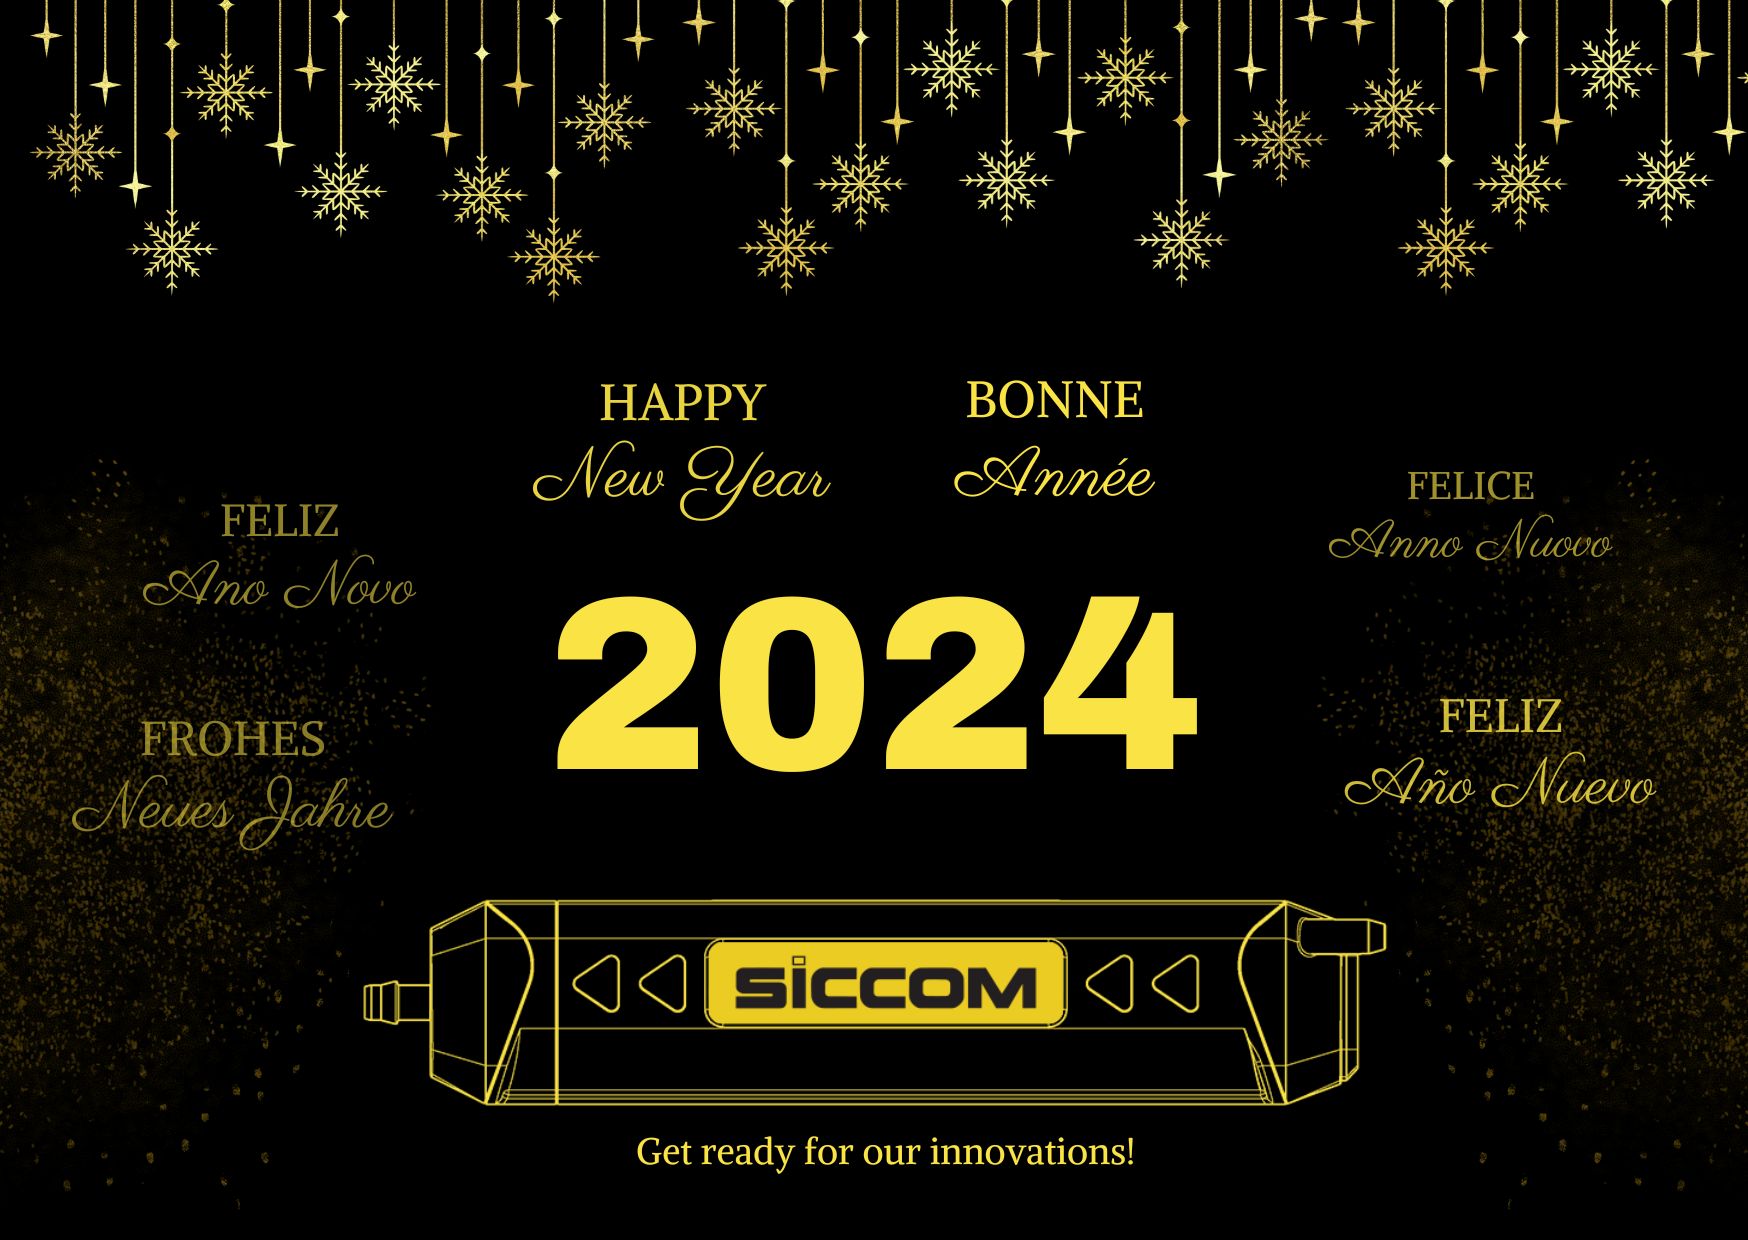 SICCOM vous souhaite une excellente année 2024 !